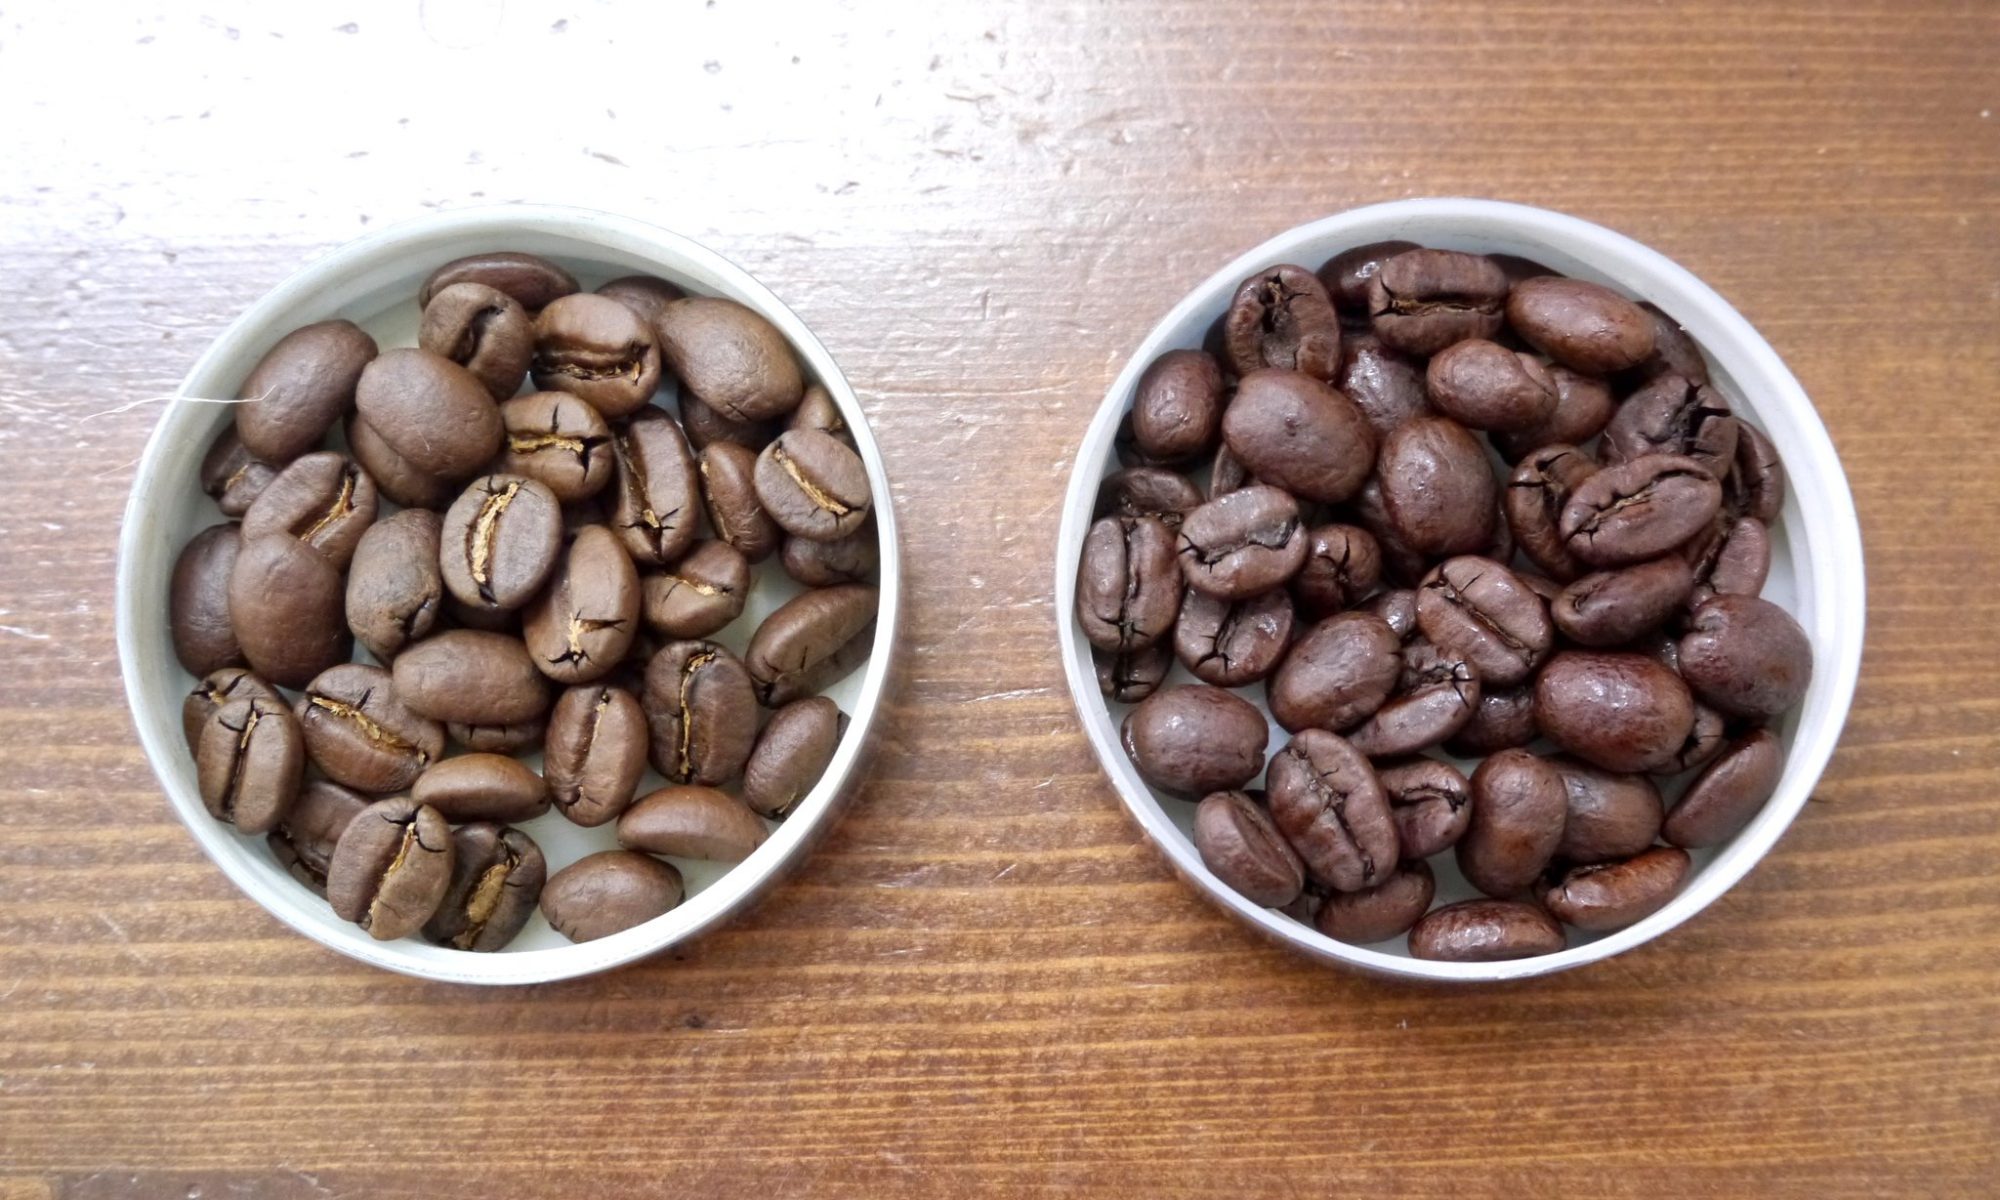 デカフェ(カフェインレスコーヒー)の焙煎豆